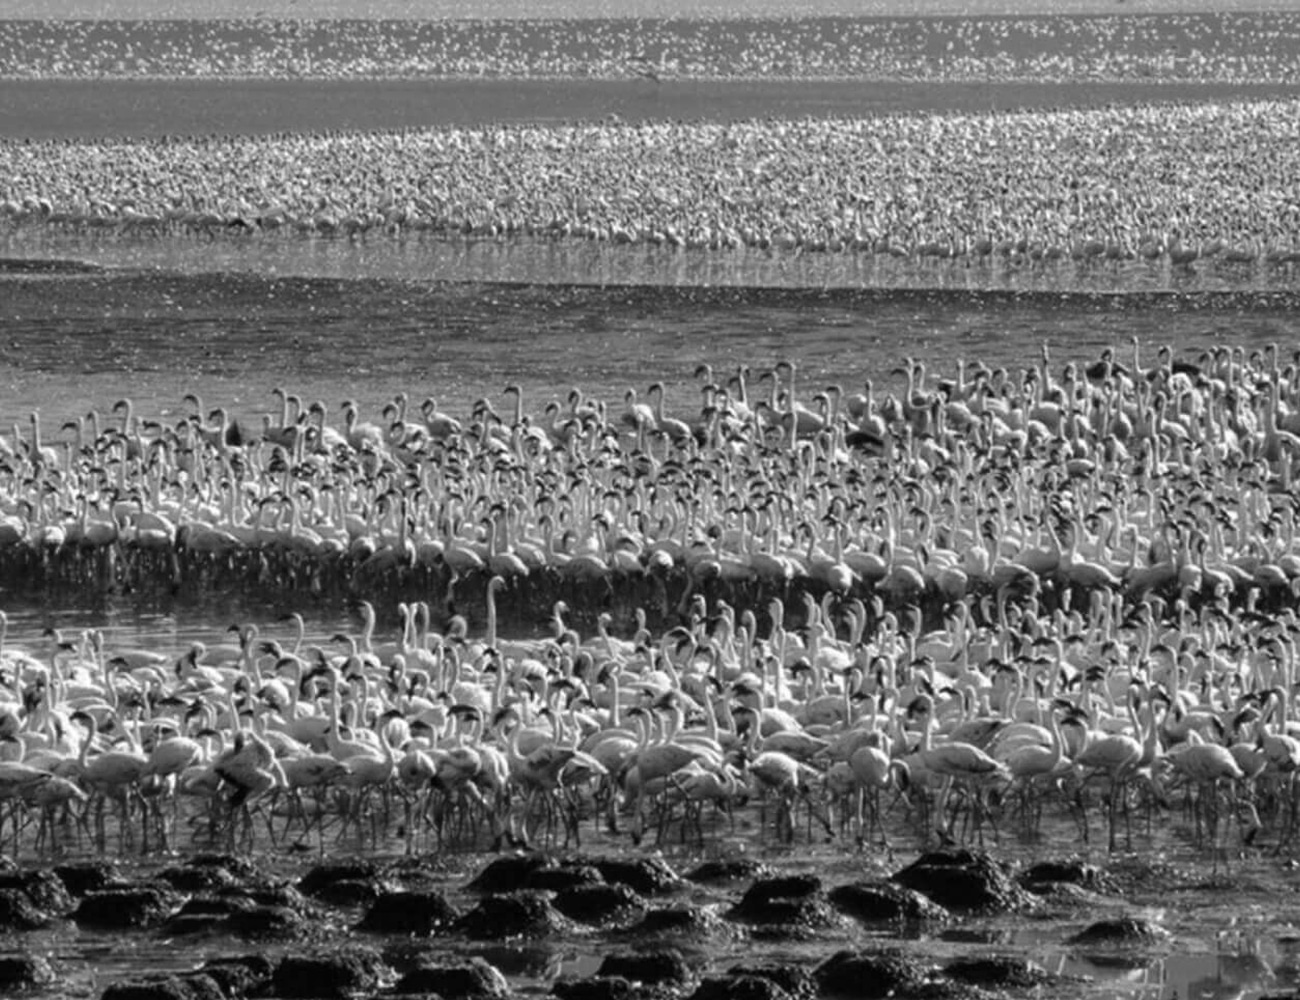 Flamingo Sightings at Lake Bogoria